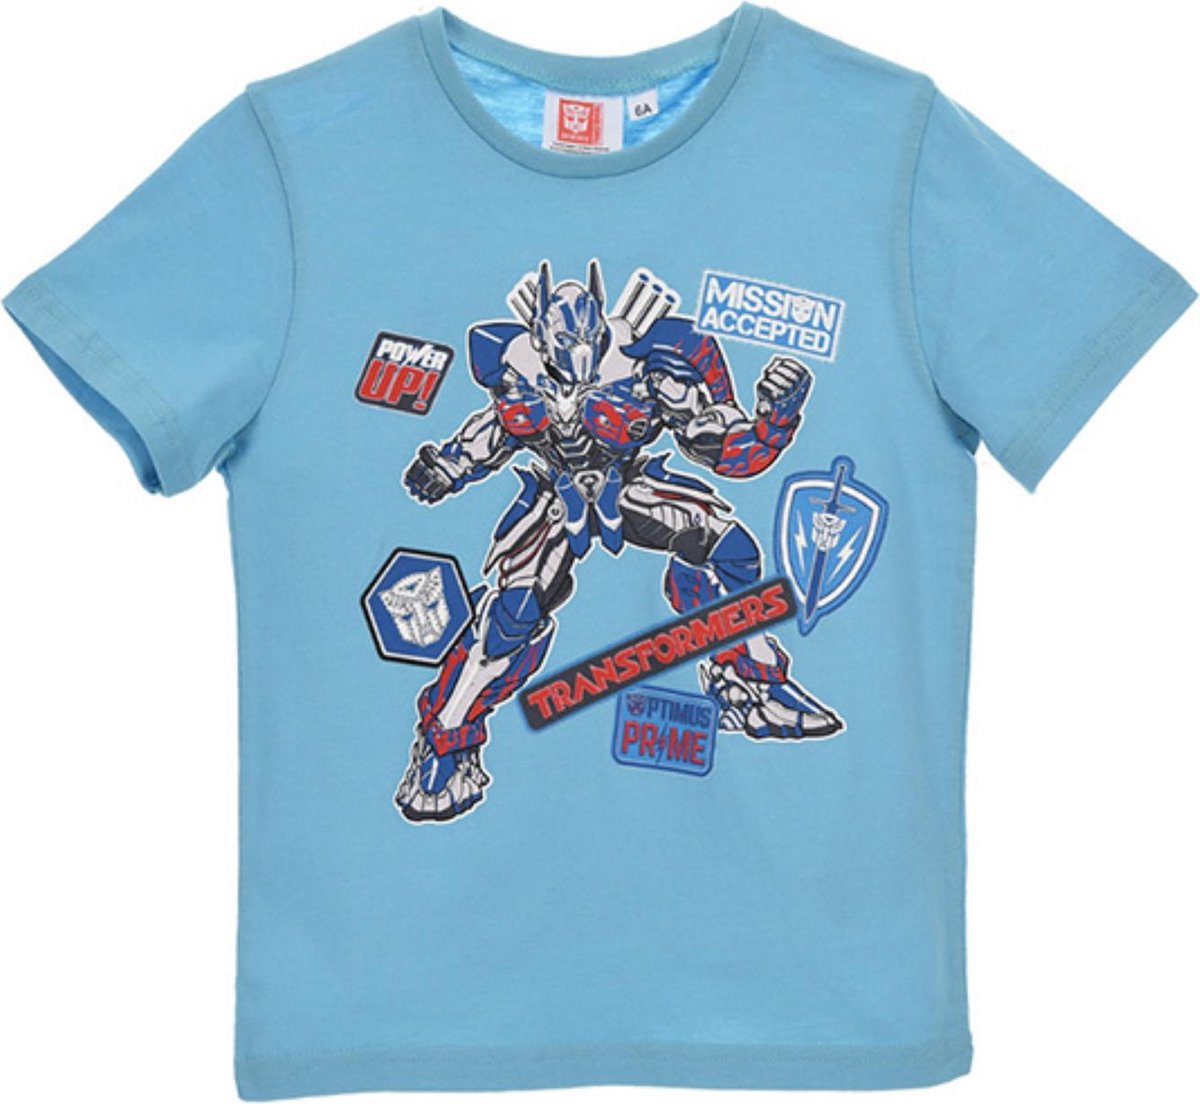 Reinig de vloer handelaar Belastingbetaler Transformers t-shirt licht blauw maat 92/98 | bol.com